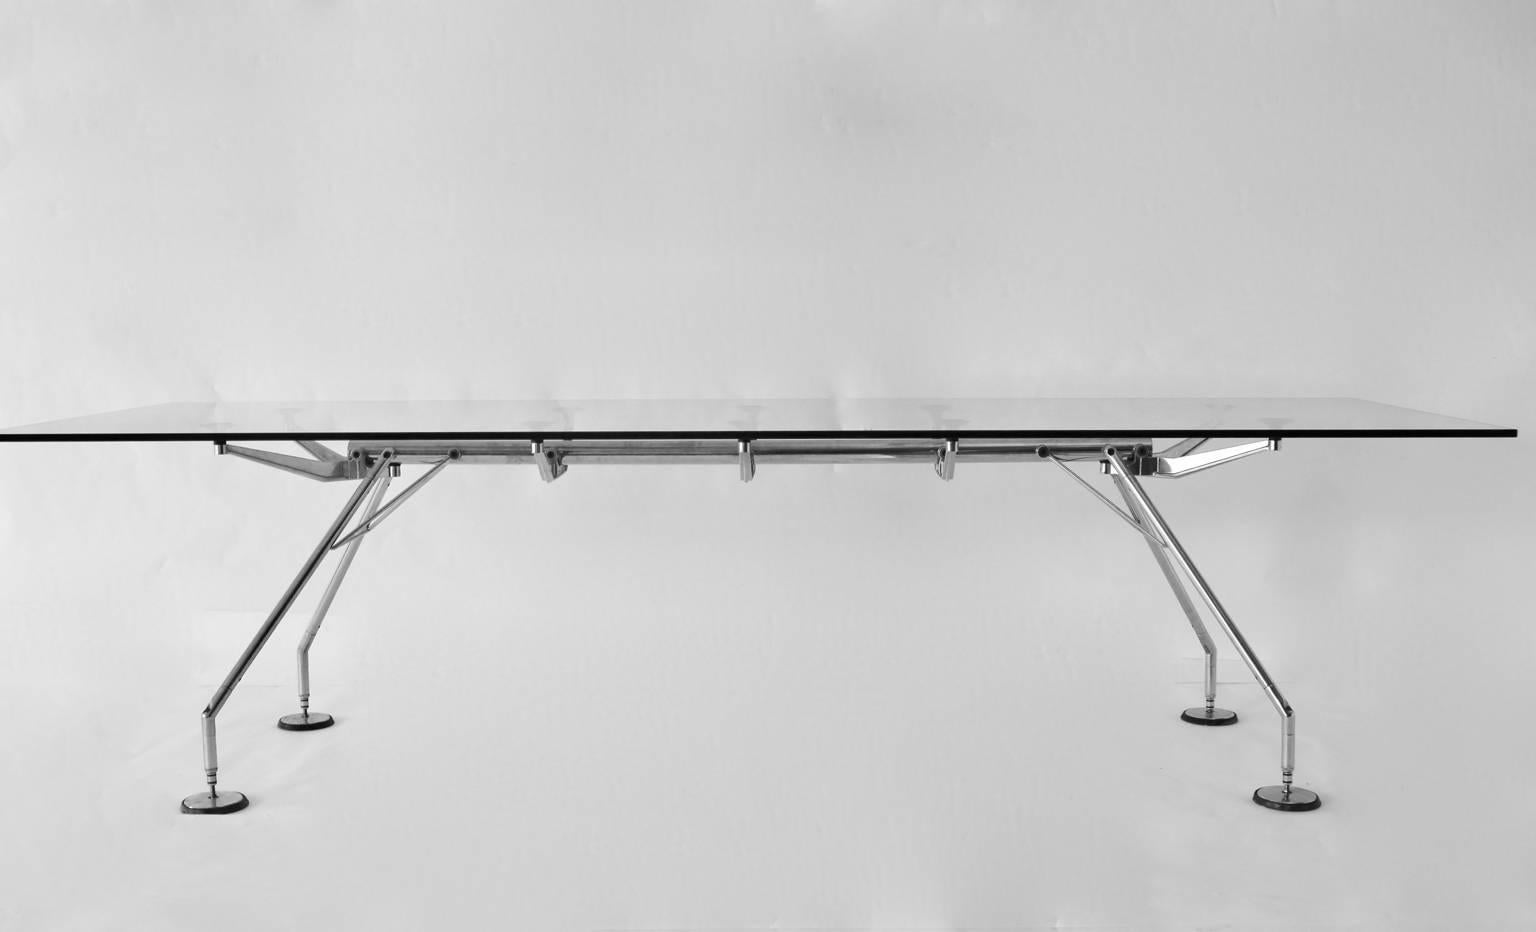 Table de conférence moderniste en verre et chrome pour salle à manger avec une taille fantastique de 110,24 dans le modèle Nomos, conçu par Sir Norman Foster, Royaume-Uni, 1986 et fabriqué par Tecno, 1986, Italie.
On se sent comme dans le futur